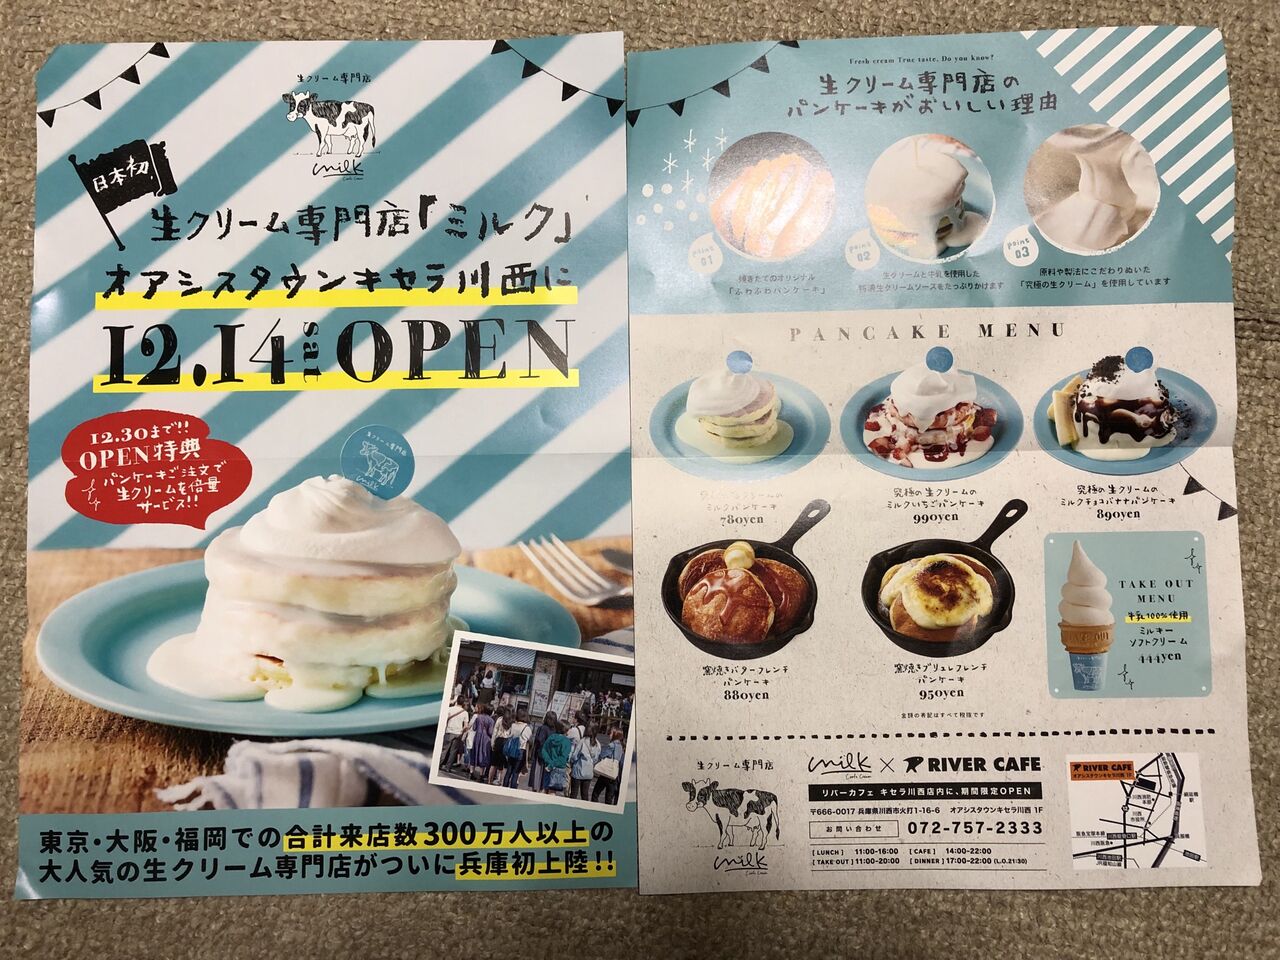 Newopen 兵庫県初上陸 生クリーム専門店 ミルク 宝塚暮らしをもっと楽しもう 情報誌comipa